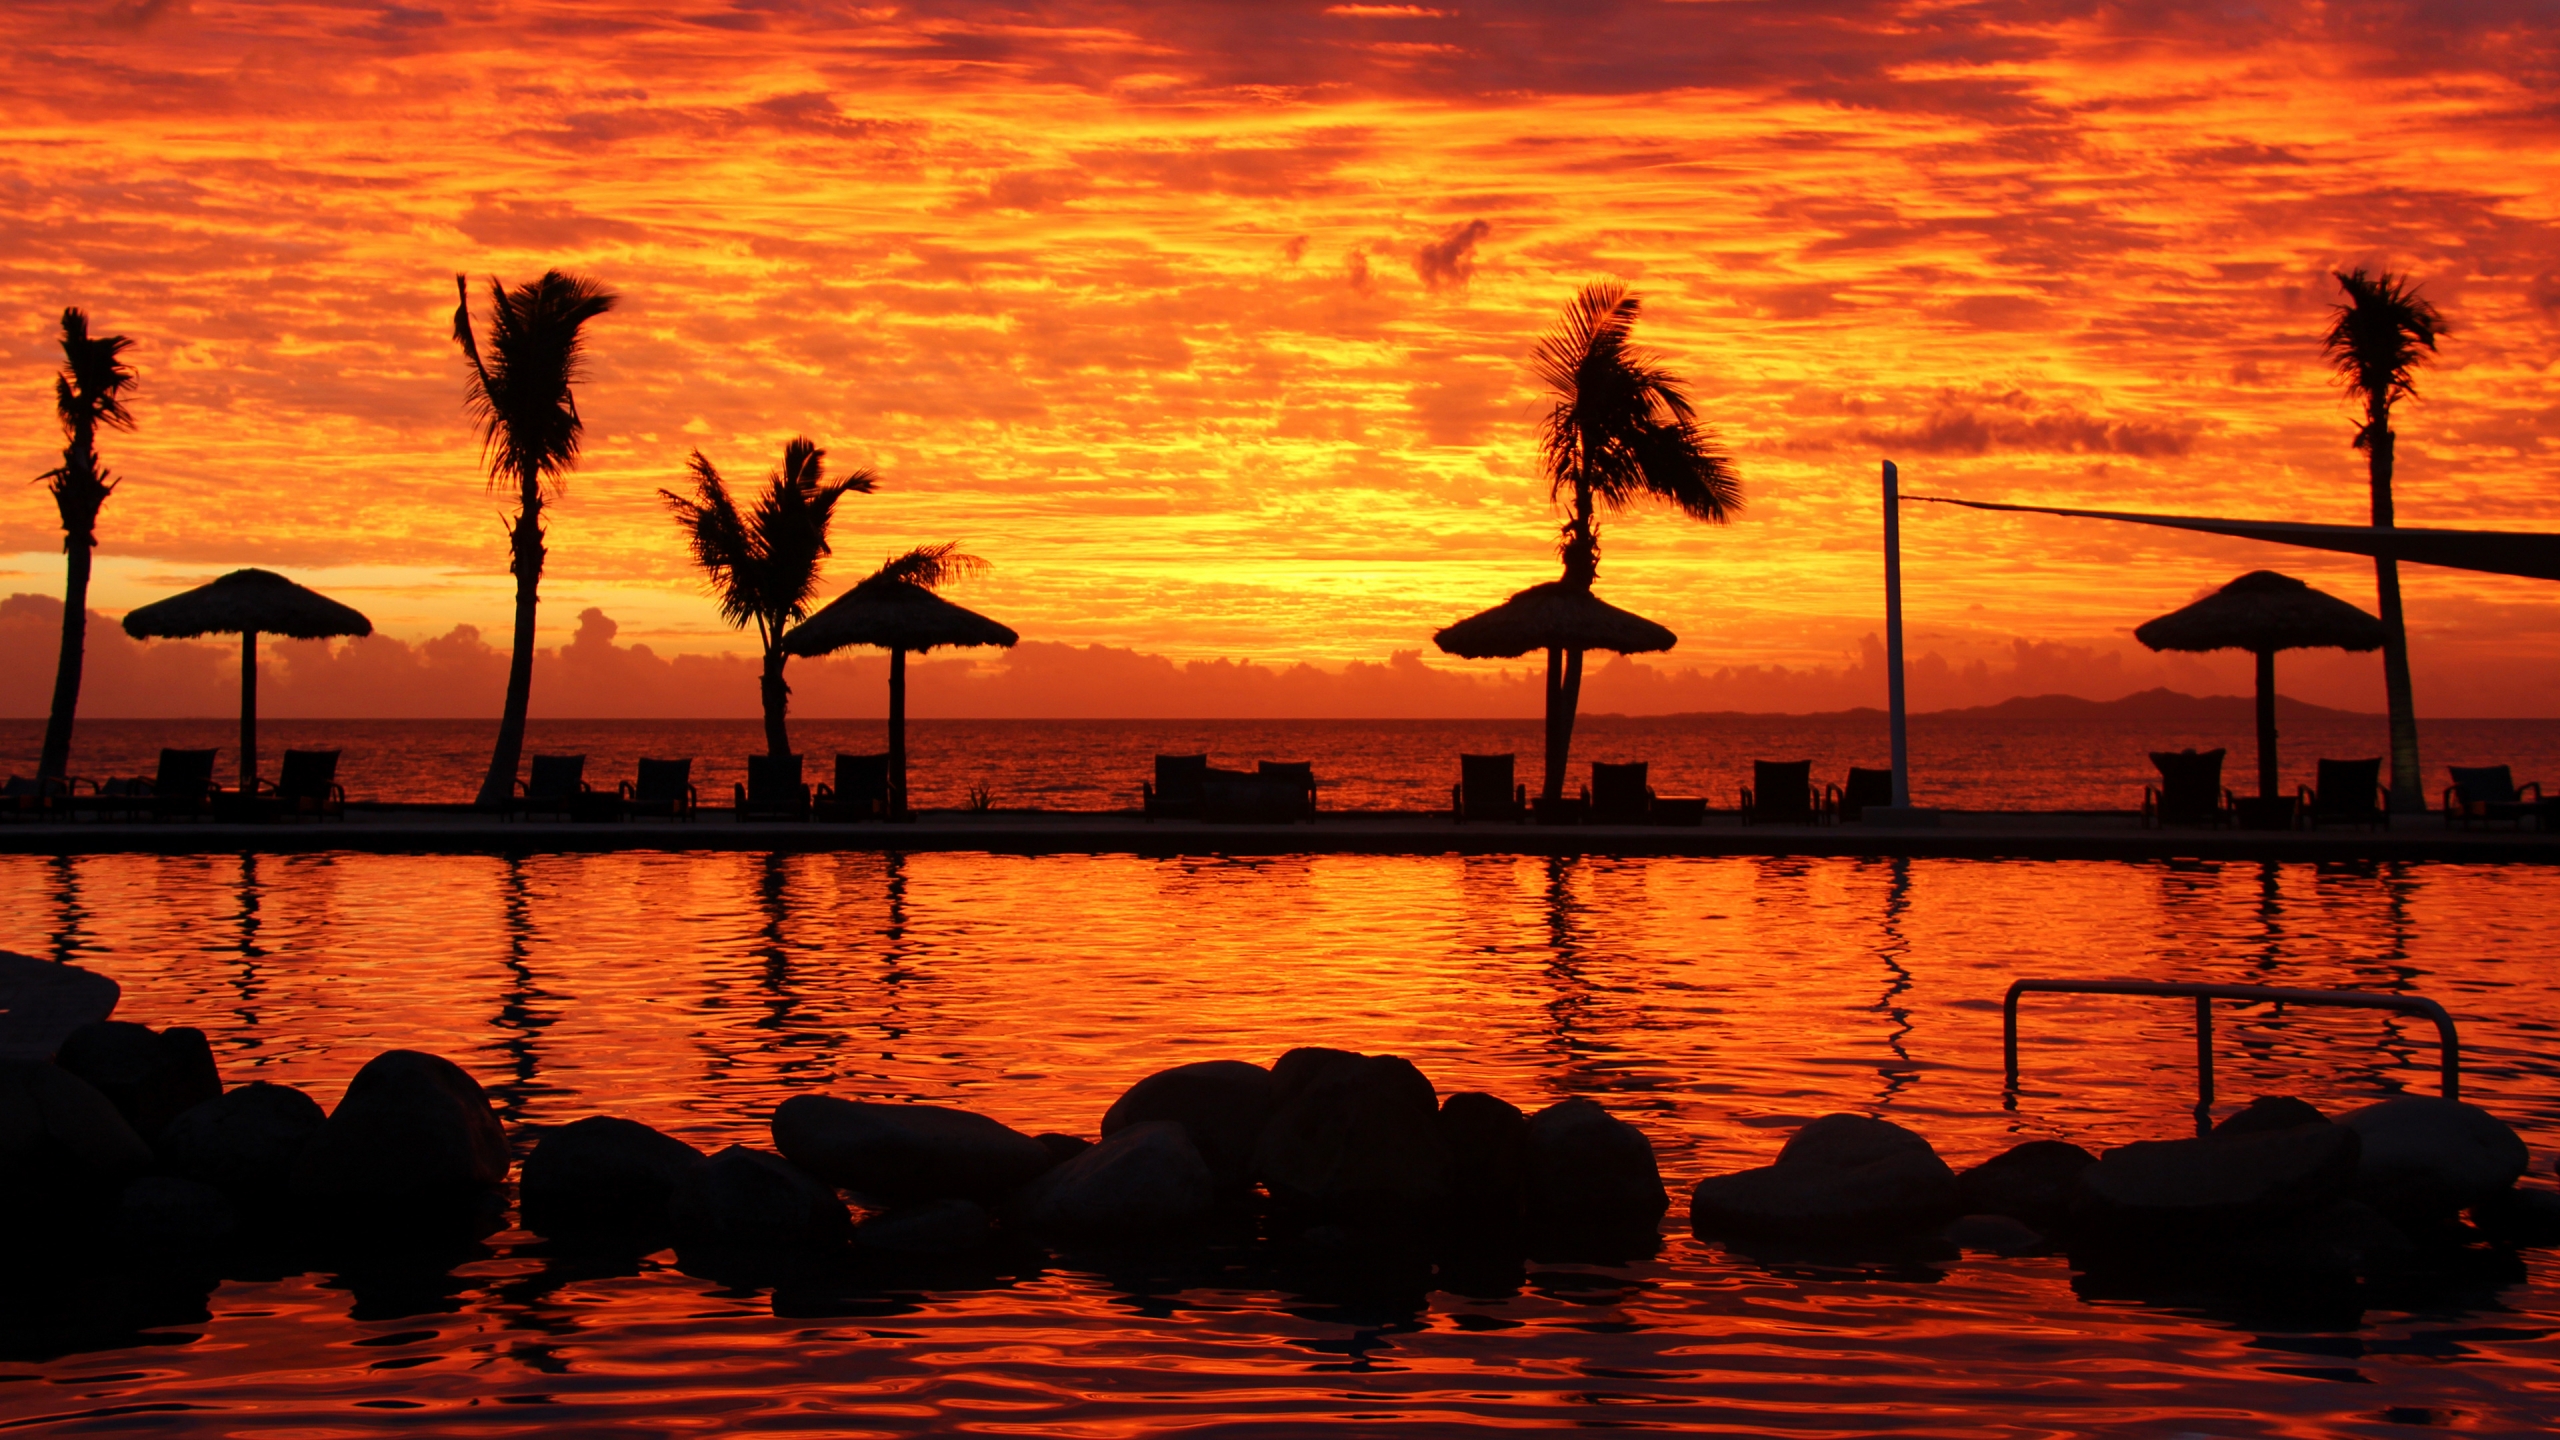 Fijian Sunset for 2560x1440 HDTV resolution